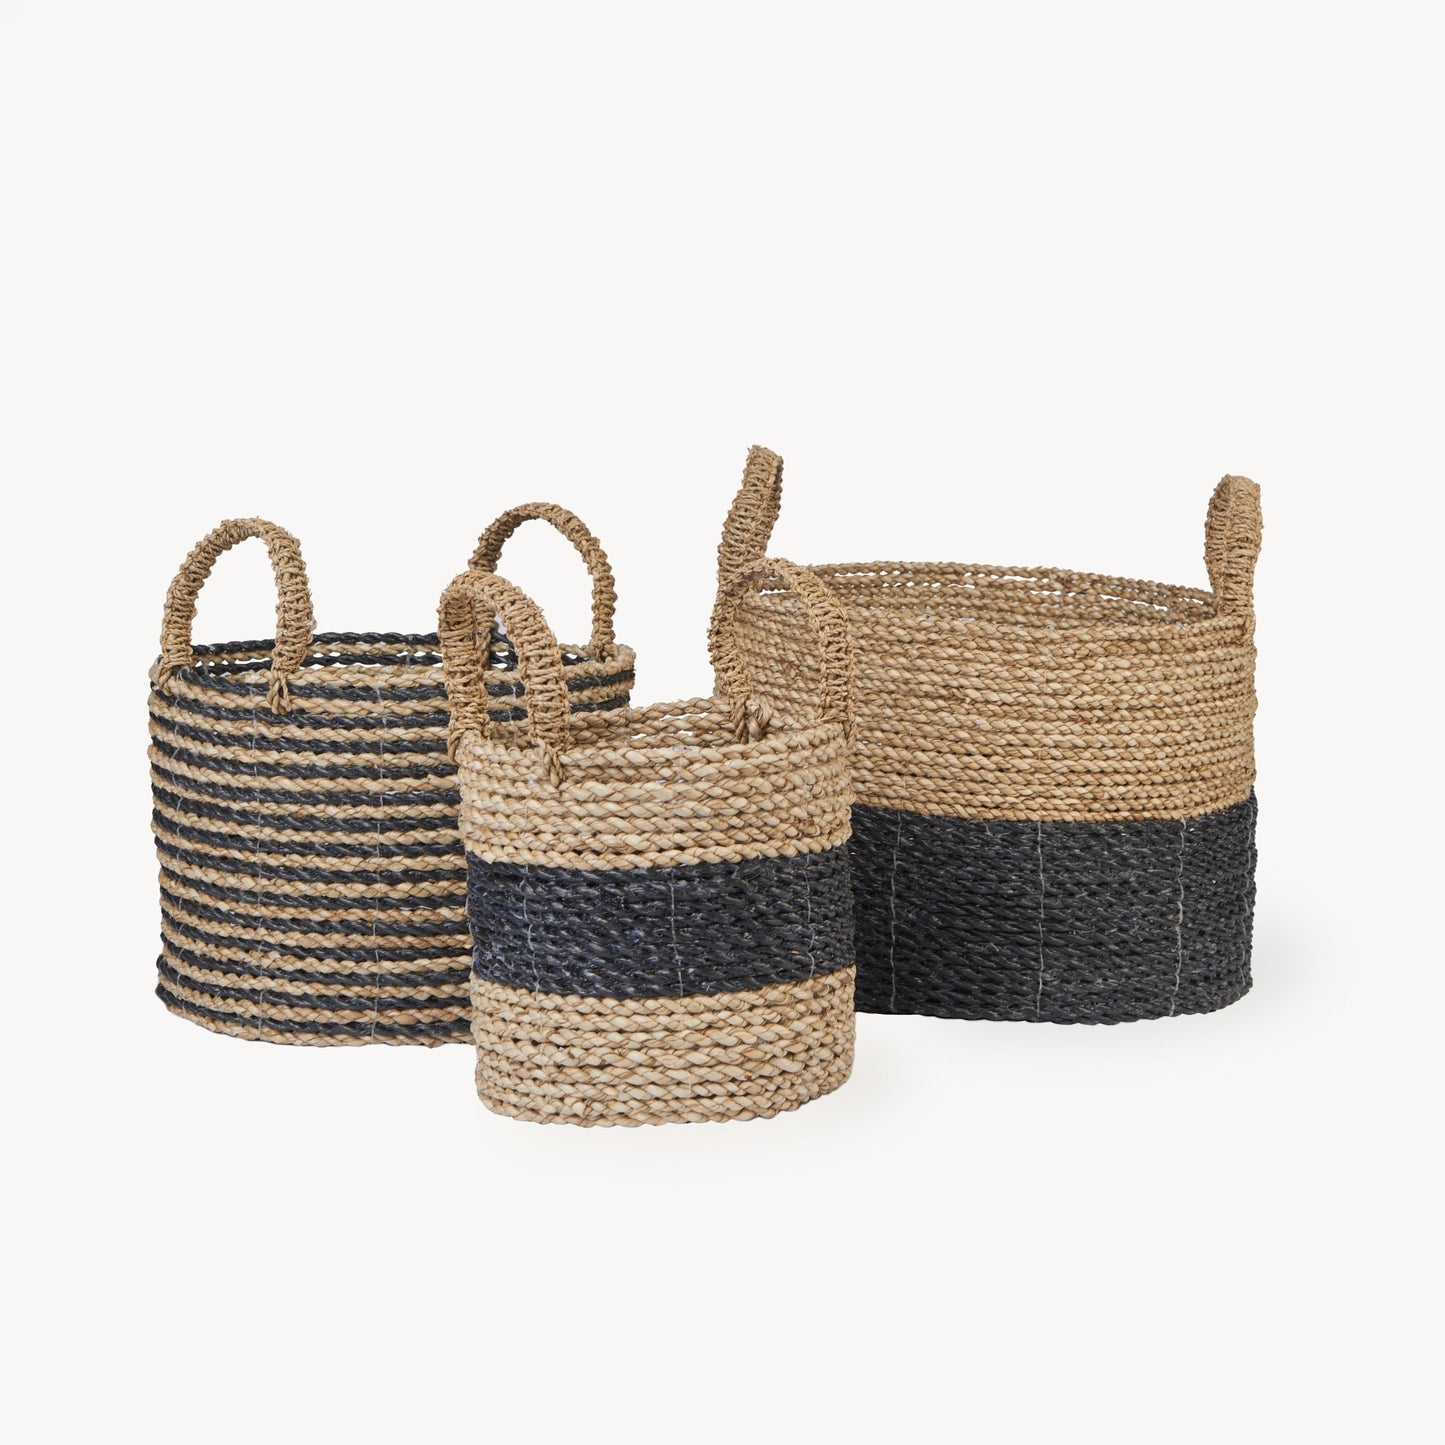 Handled Basket Set of 3 - Black/Natural